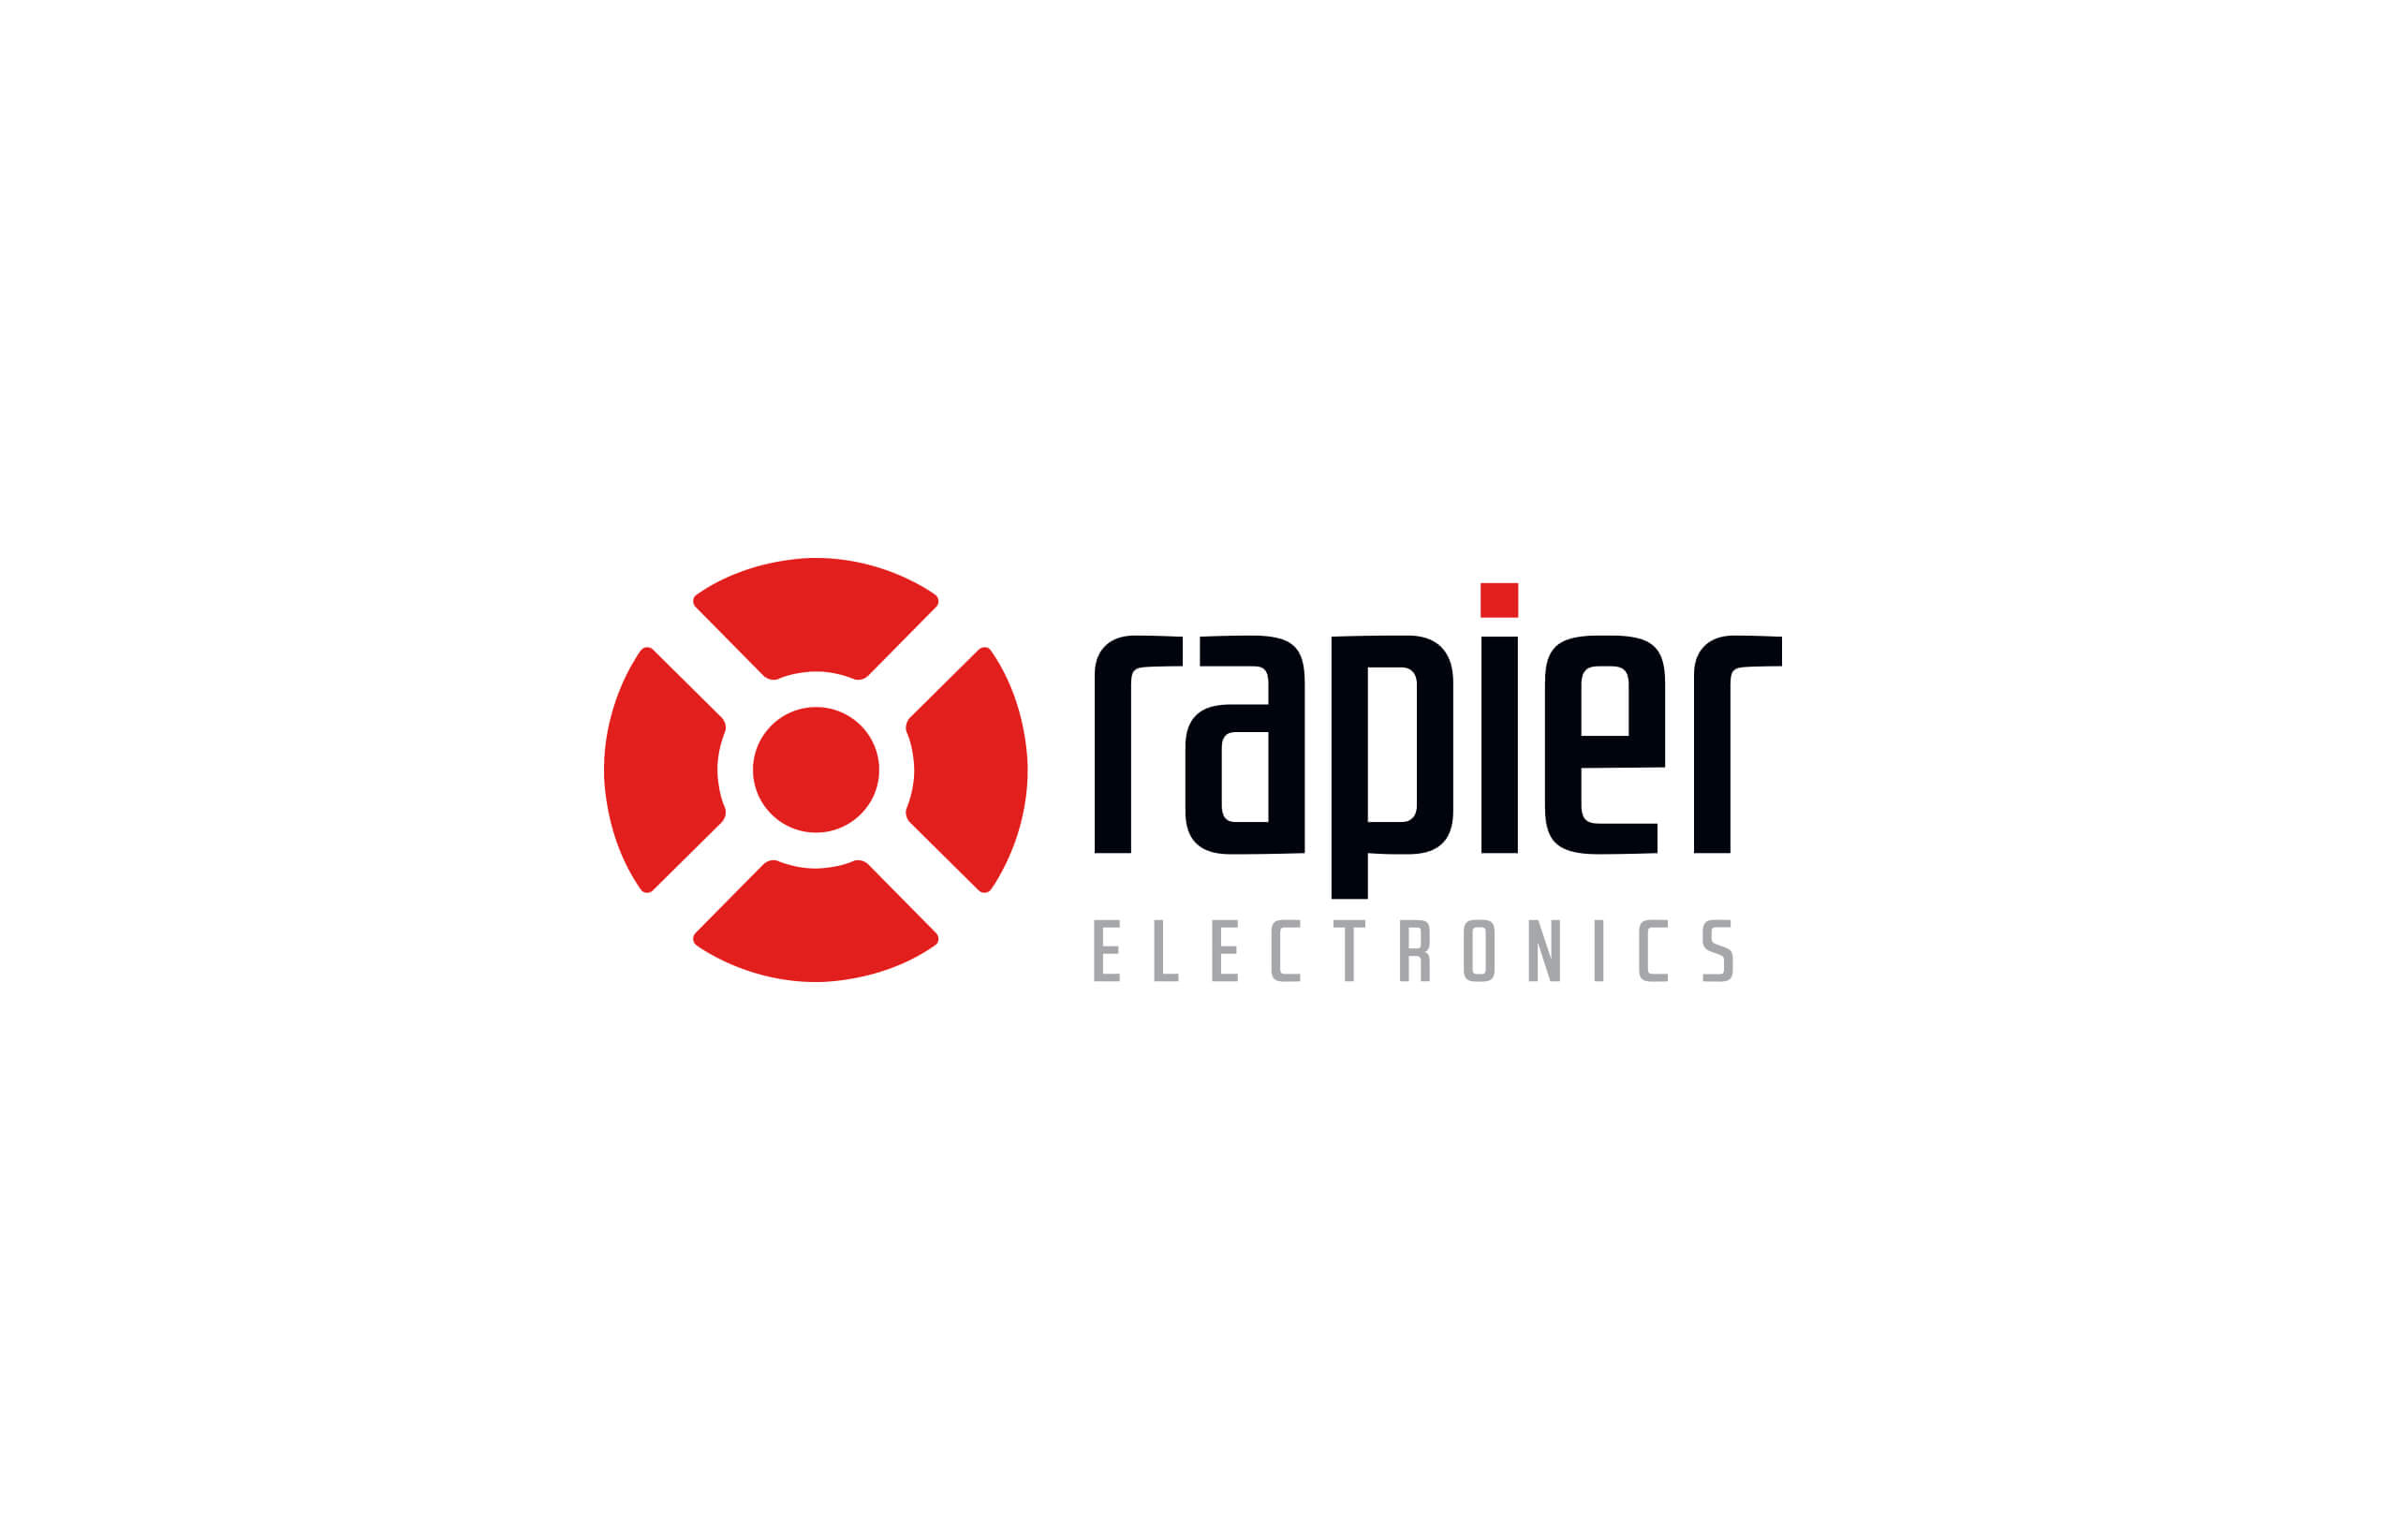 Icon Graphic Design Adelaide. Rapier Electronic logo.